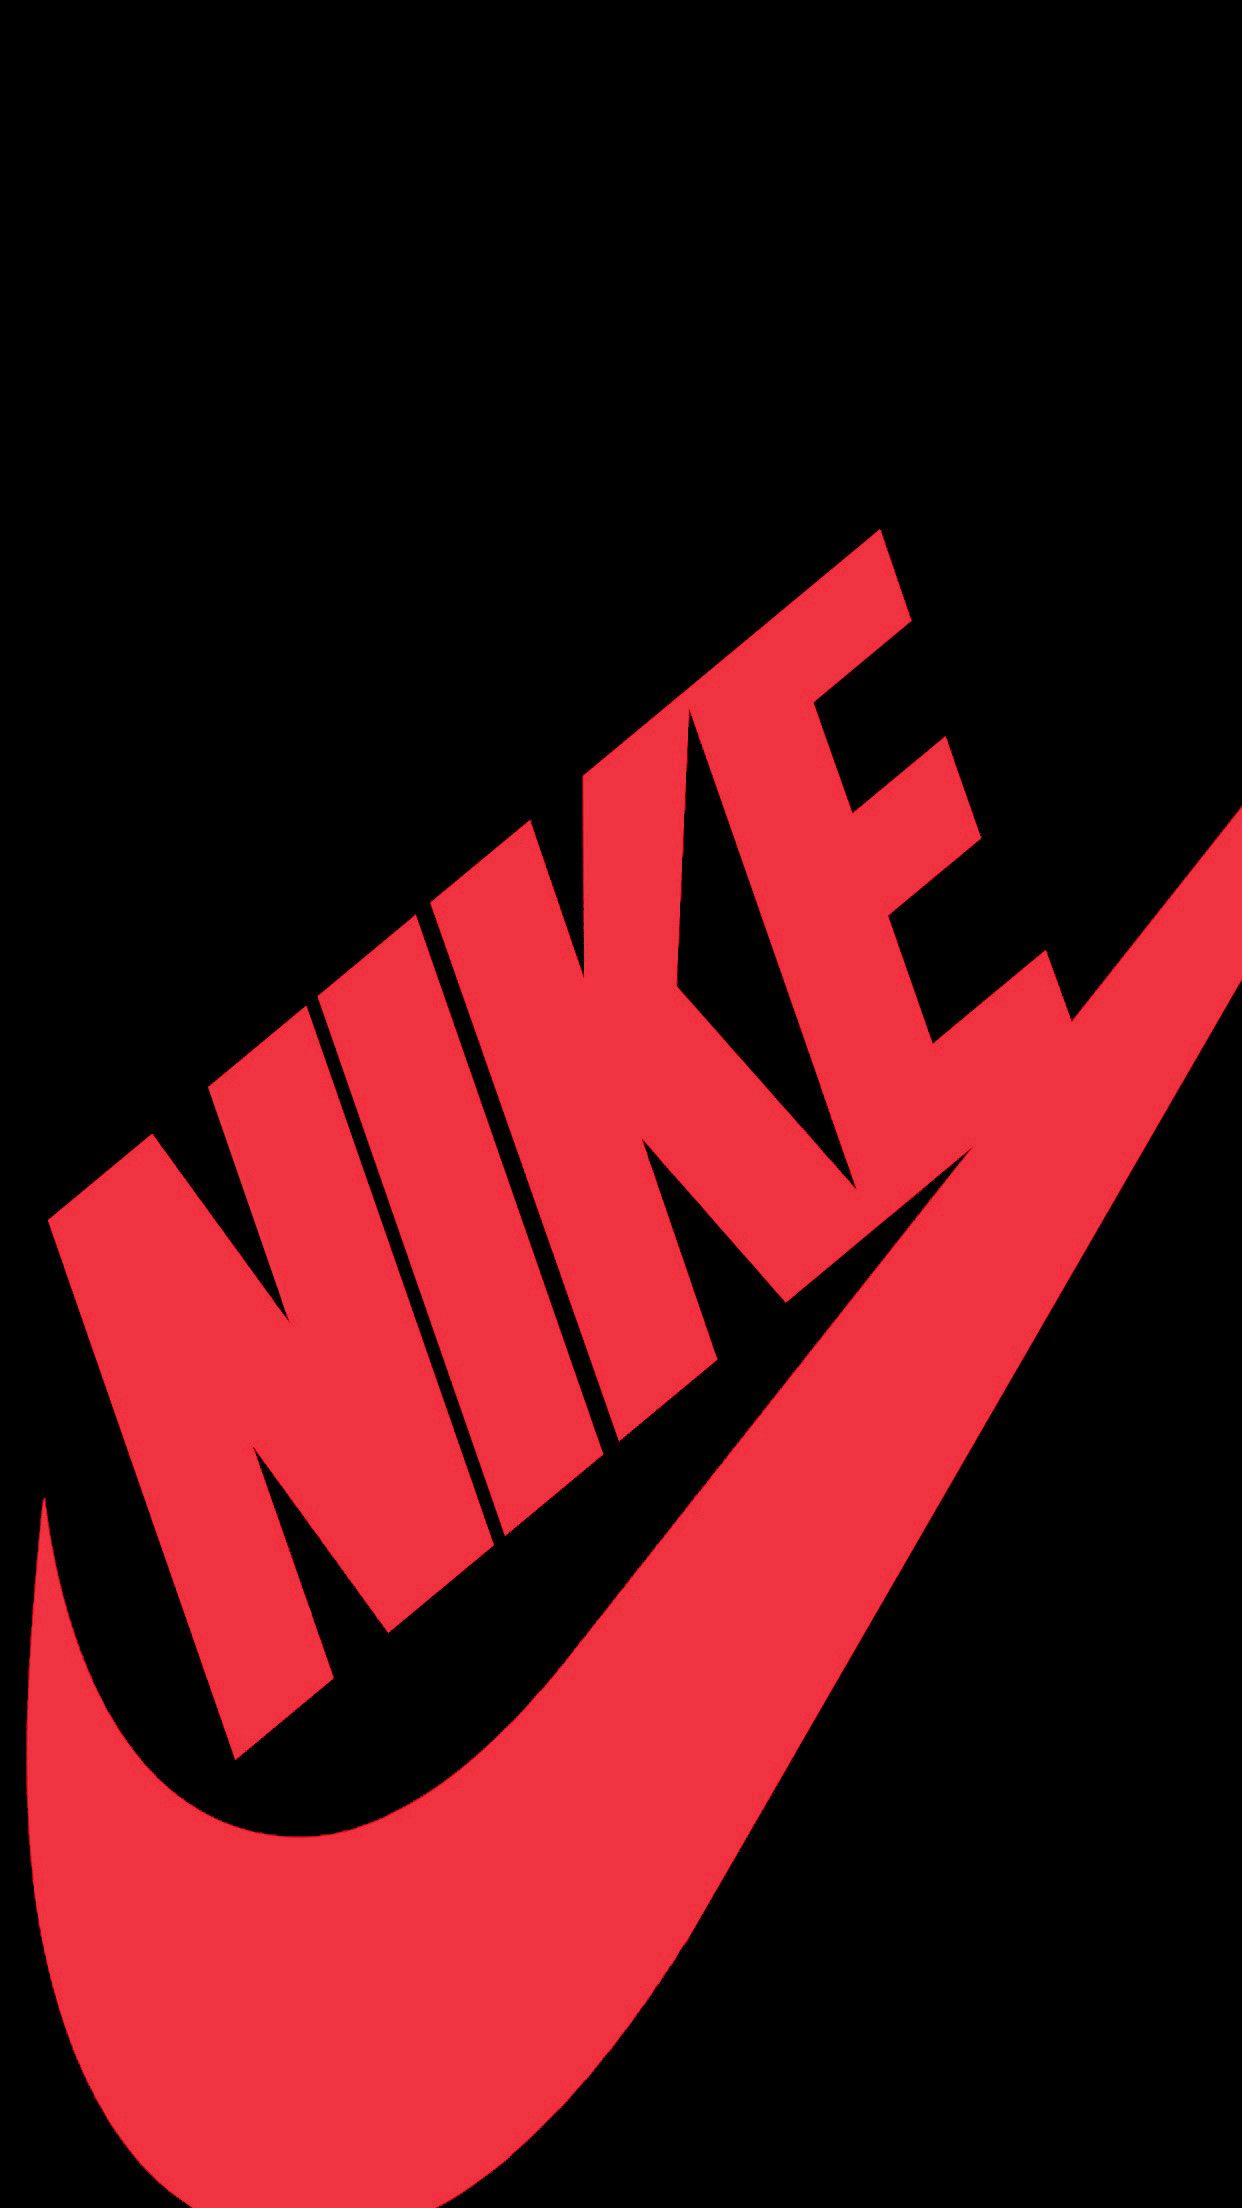 Fondos de pantalla de Nike - FondosMil